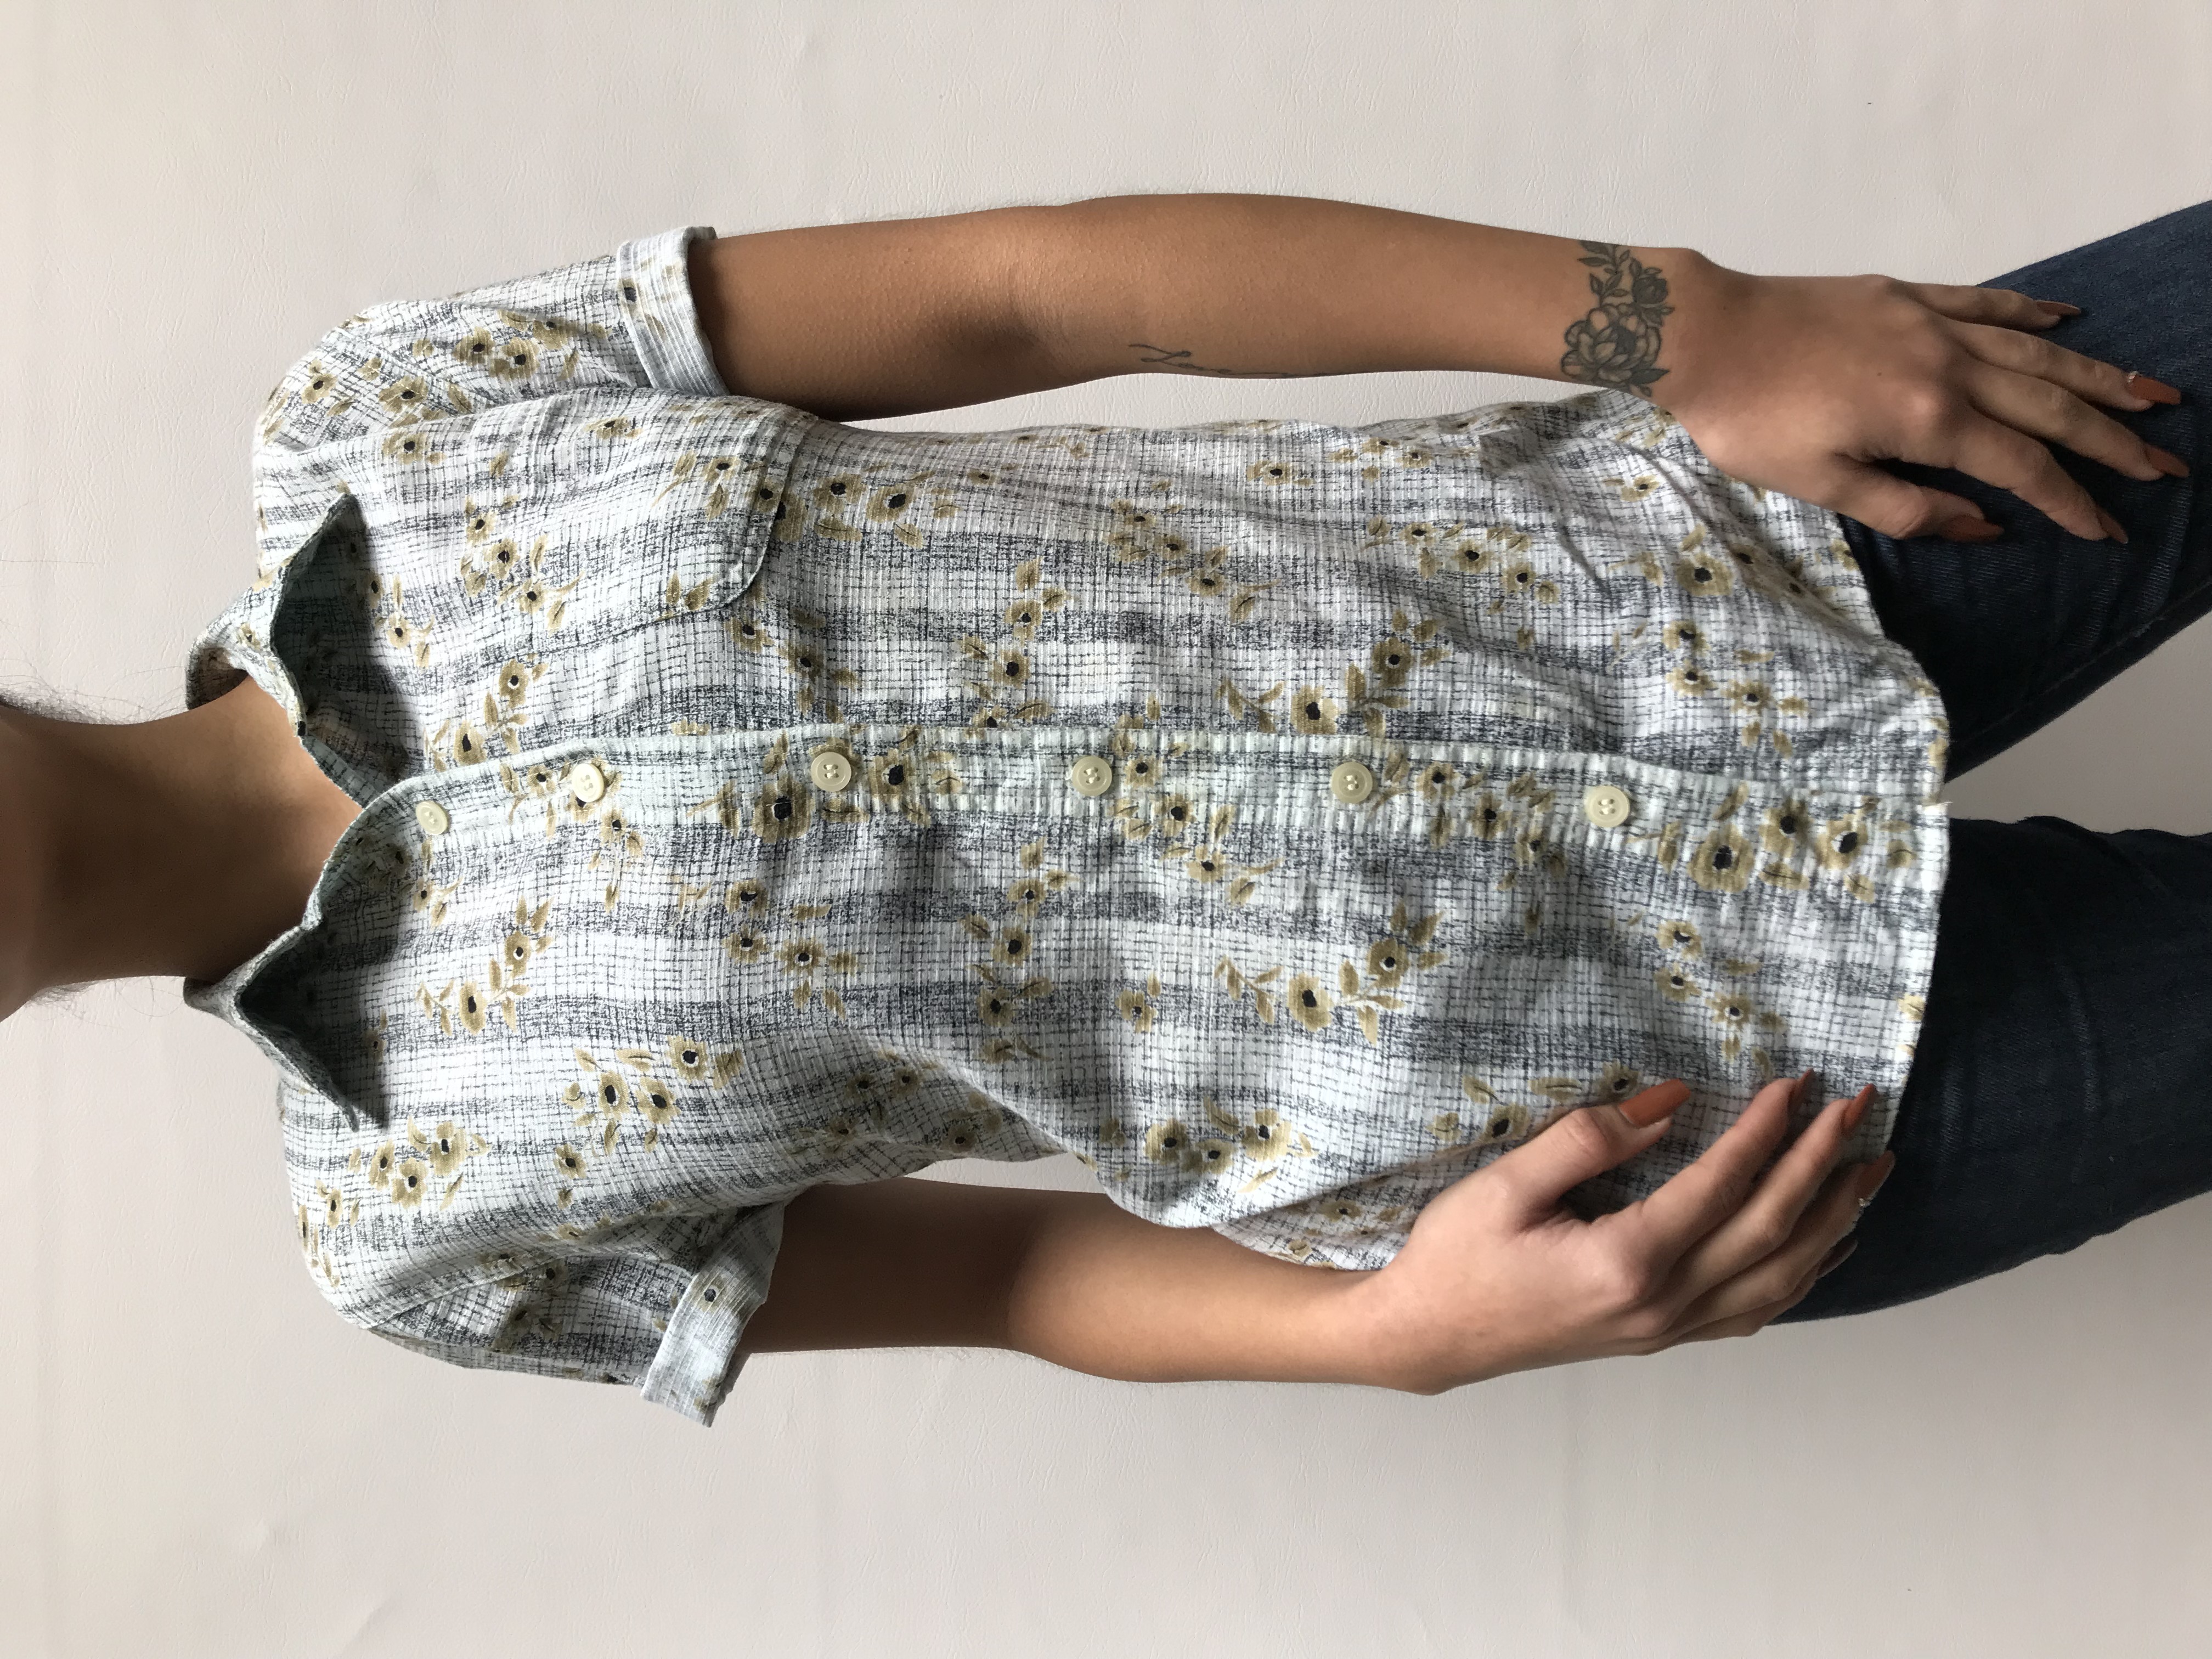 Blusa camisera vintage con estampado de flores beige y lineas negras, 100% algodón. Lleva bolsillo parche
Talla M